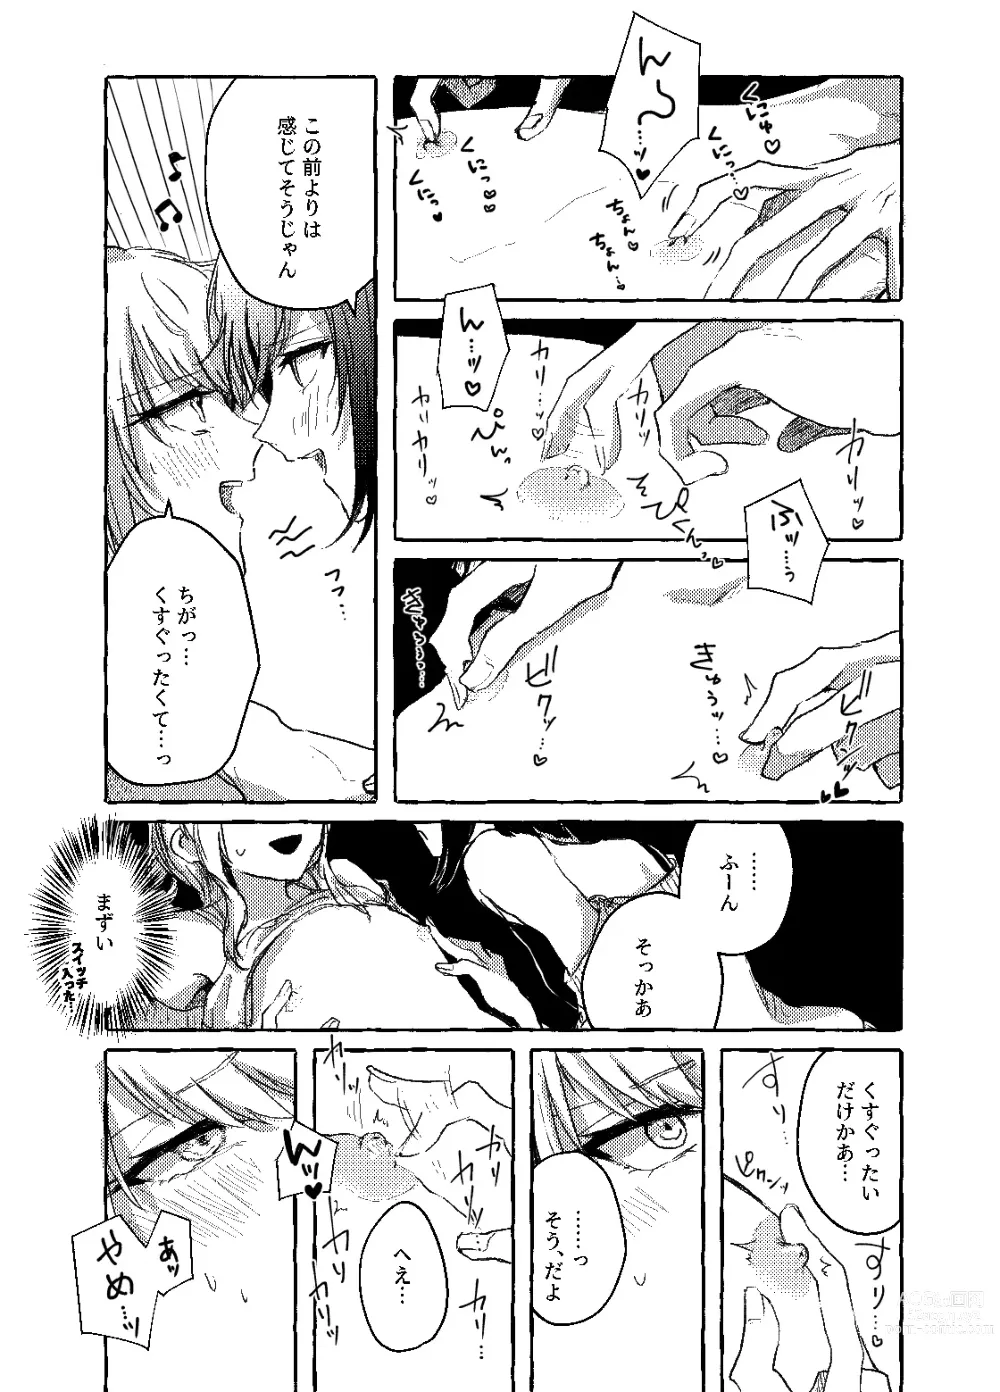 Page 10 of doujinshi Hakoniwa no Naka no Kimi